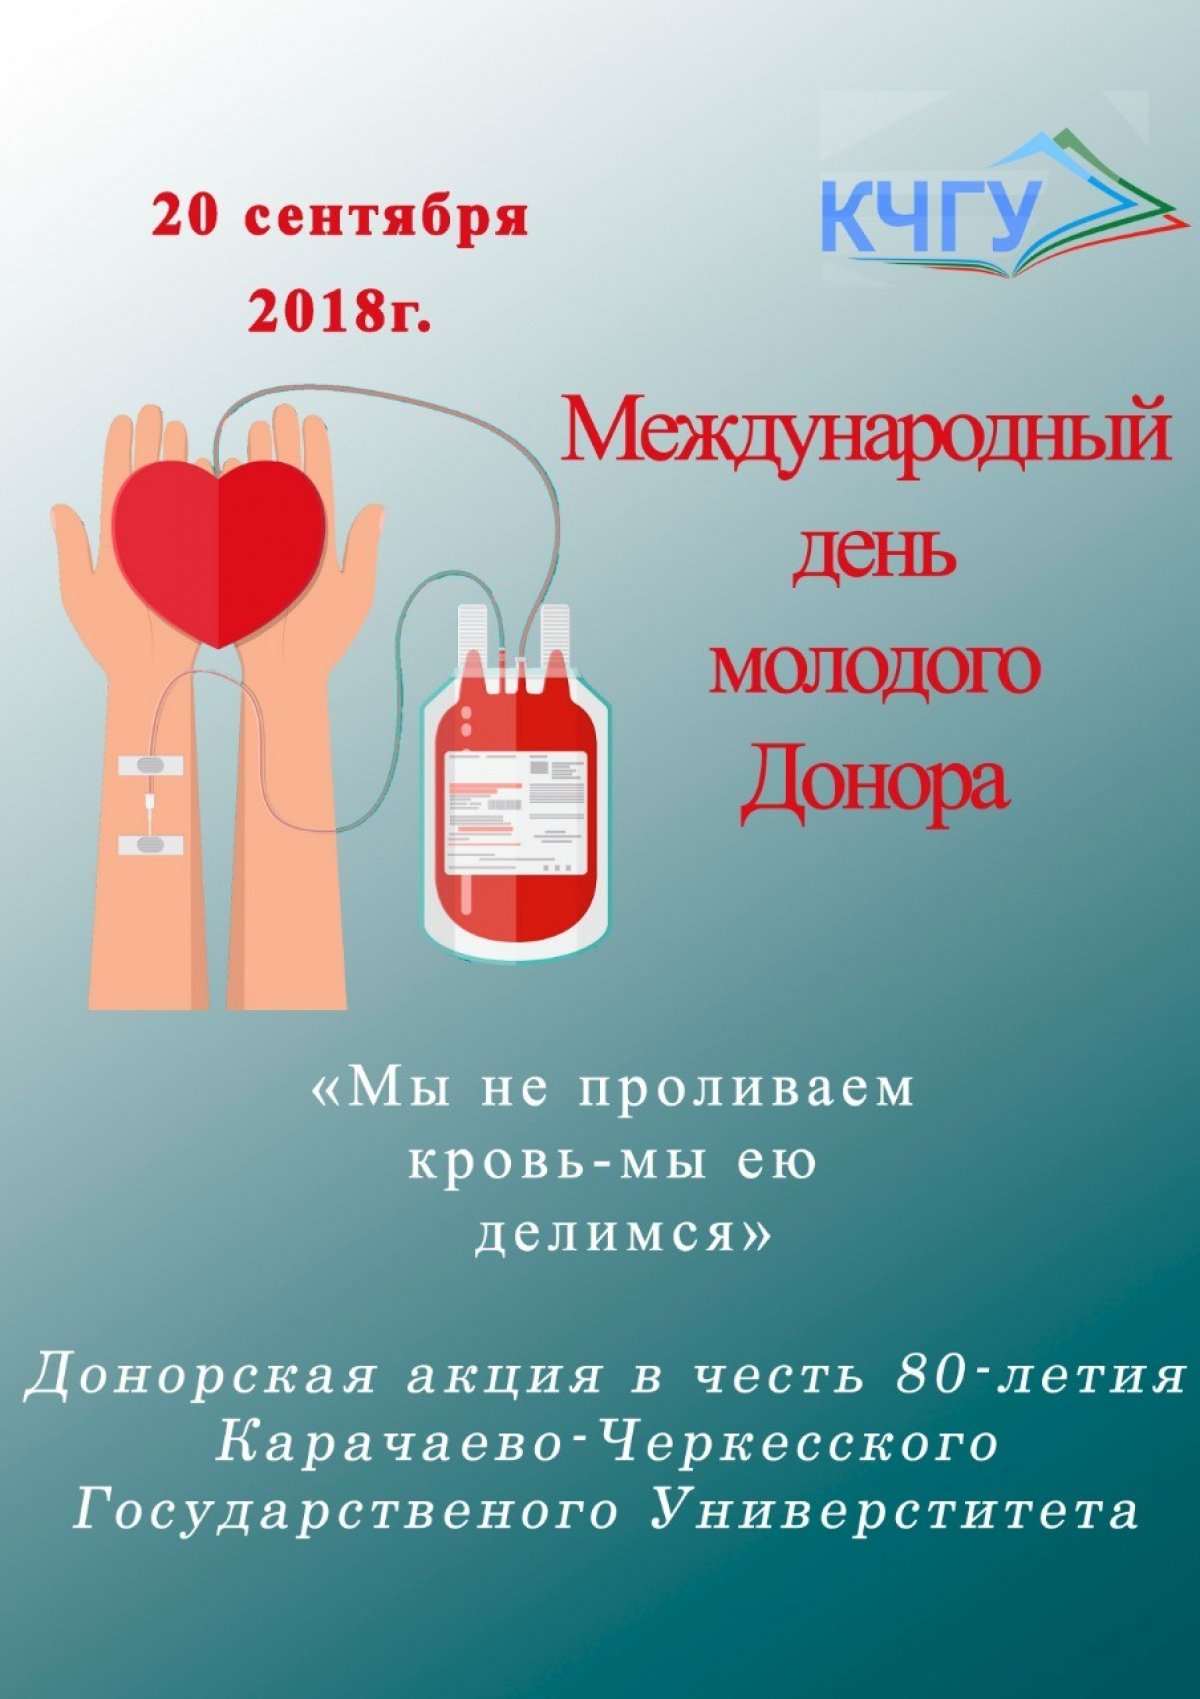 Старейший университет Карачаево-Черкесии проведёт донорскую акцию, приуроченную к 80-летию ВУЗа